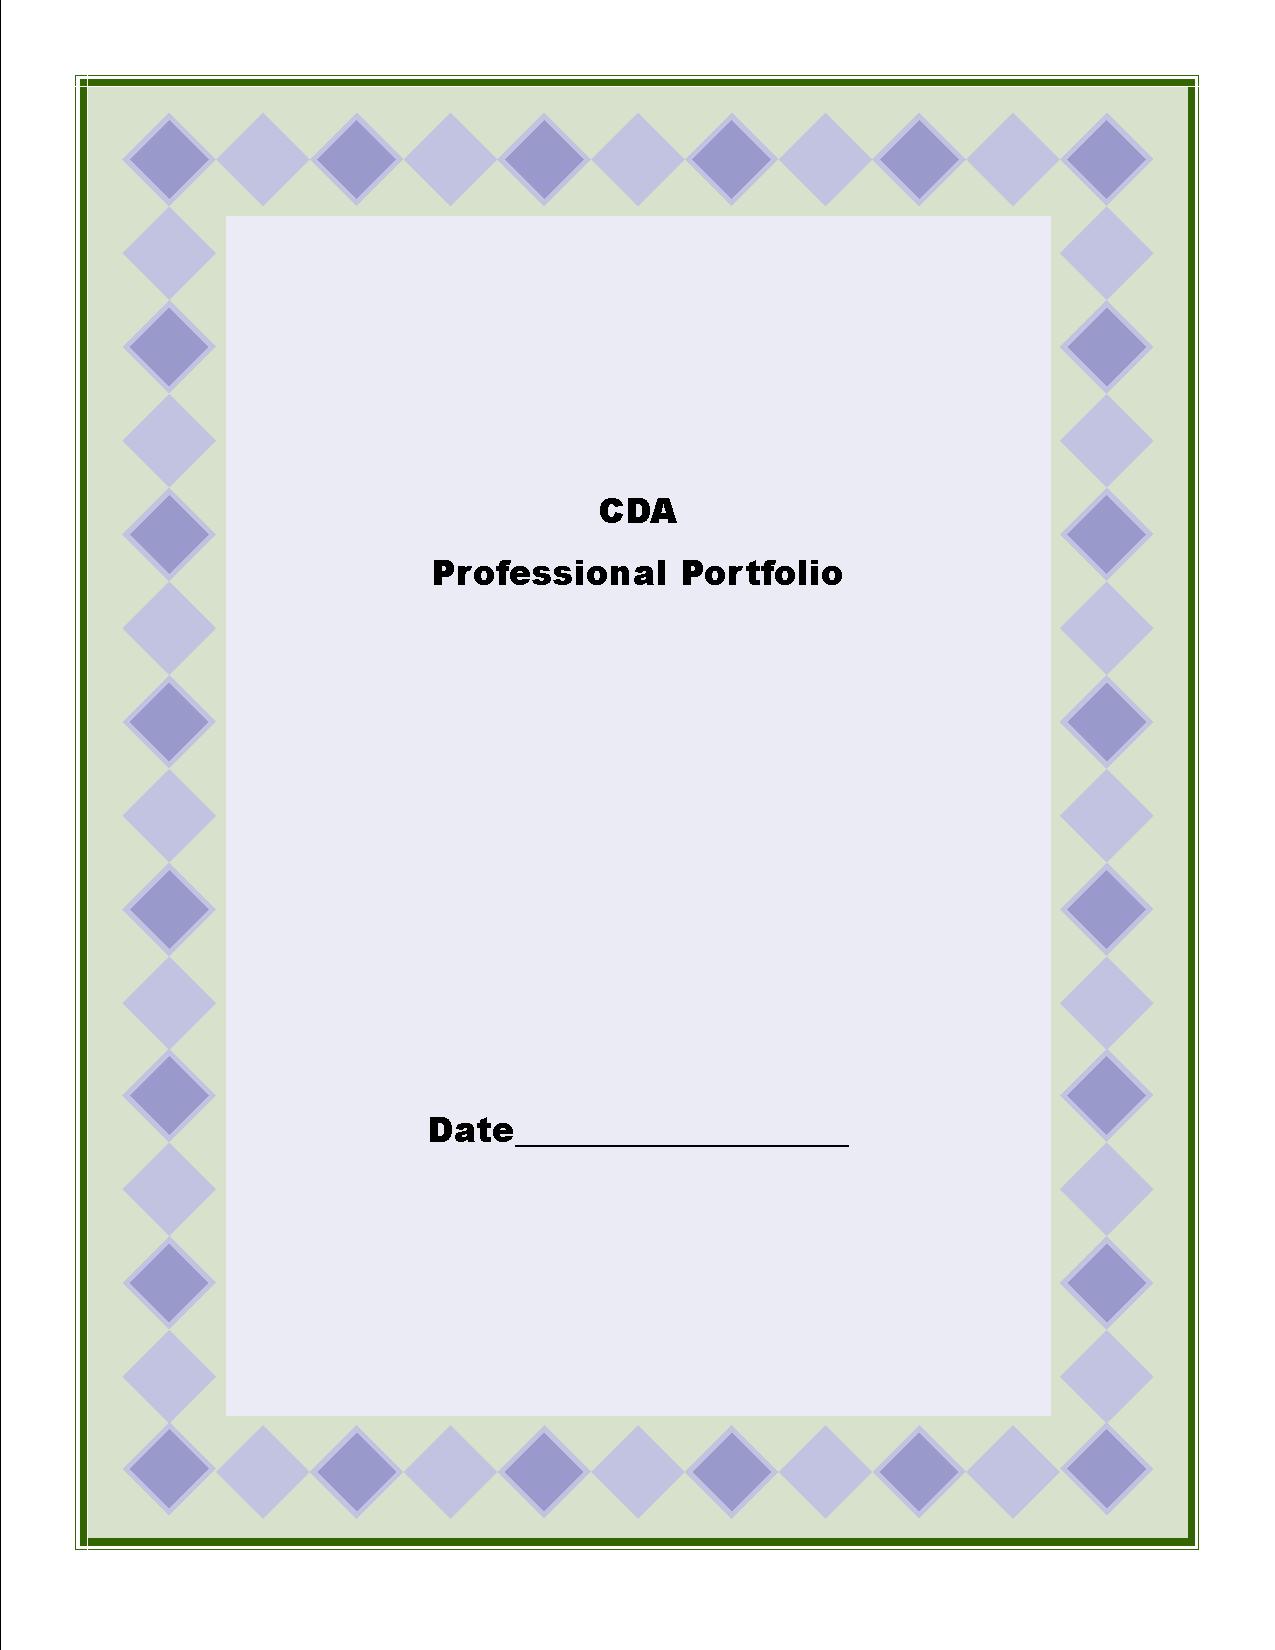 CDA Professional Portfolio Cover Sheet